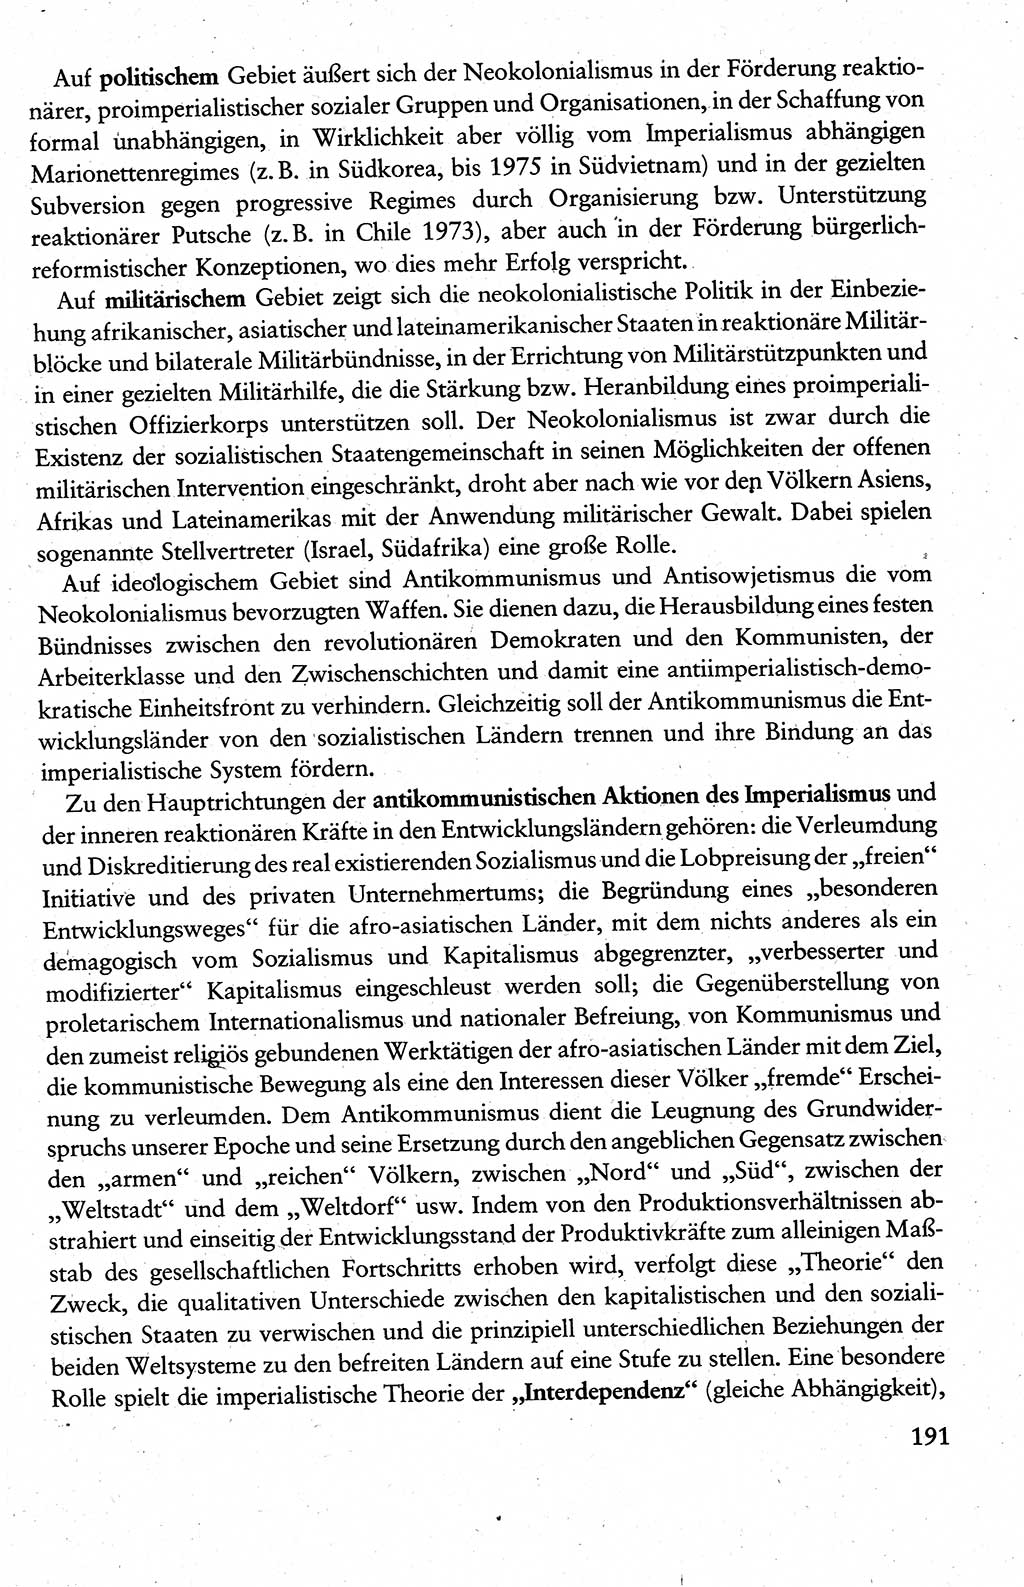 Wissenschaftlicher Kommunismus [Deutsche Demokratische Republik (DDR)], Lehrbuch für das marxistisch-leninistische Grundlagenstudium 1983, Seite 191 (Wiss. Komm. DDR Lb. 1983, S. 191)